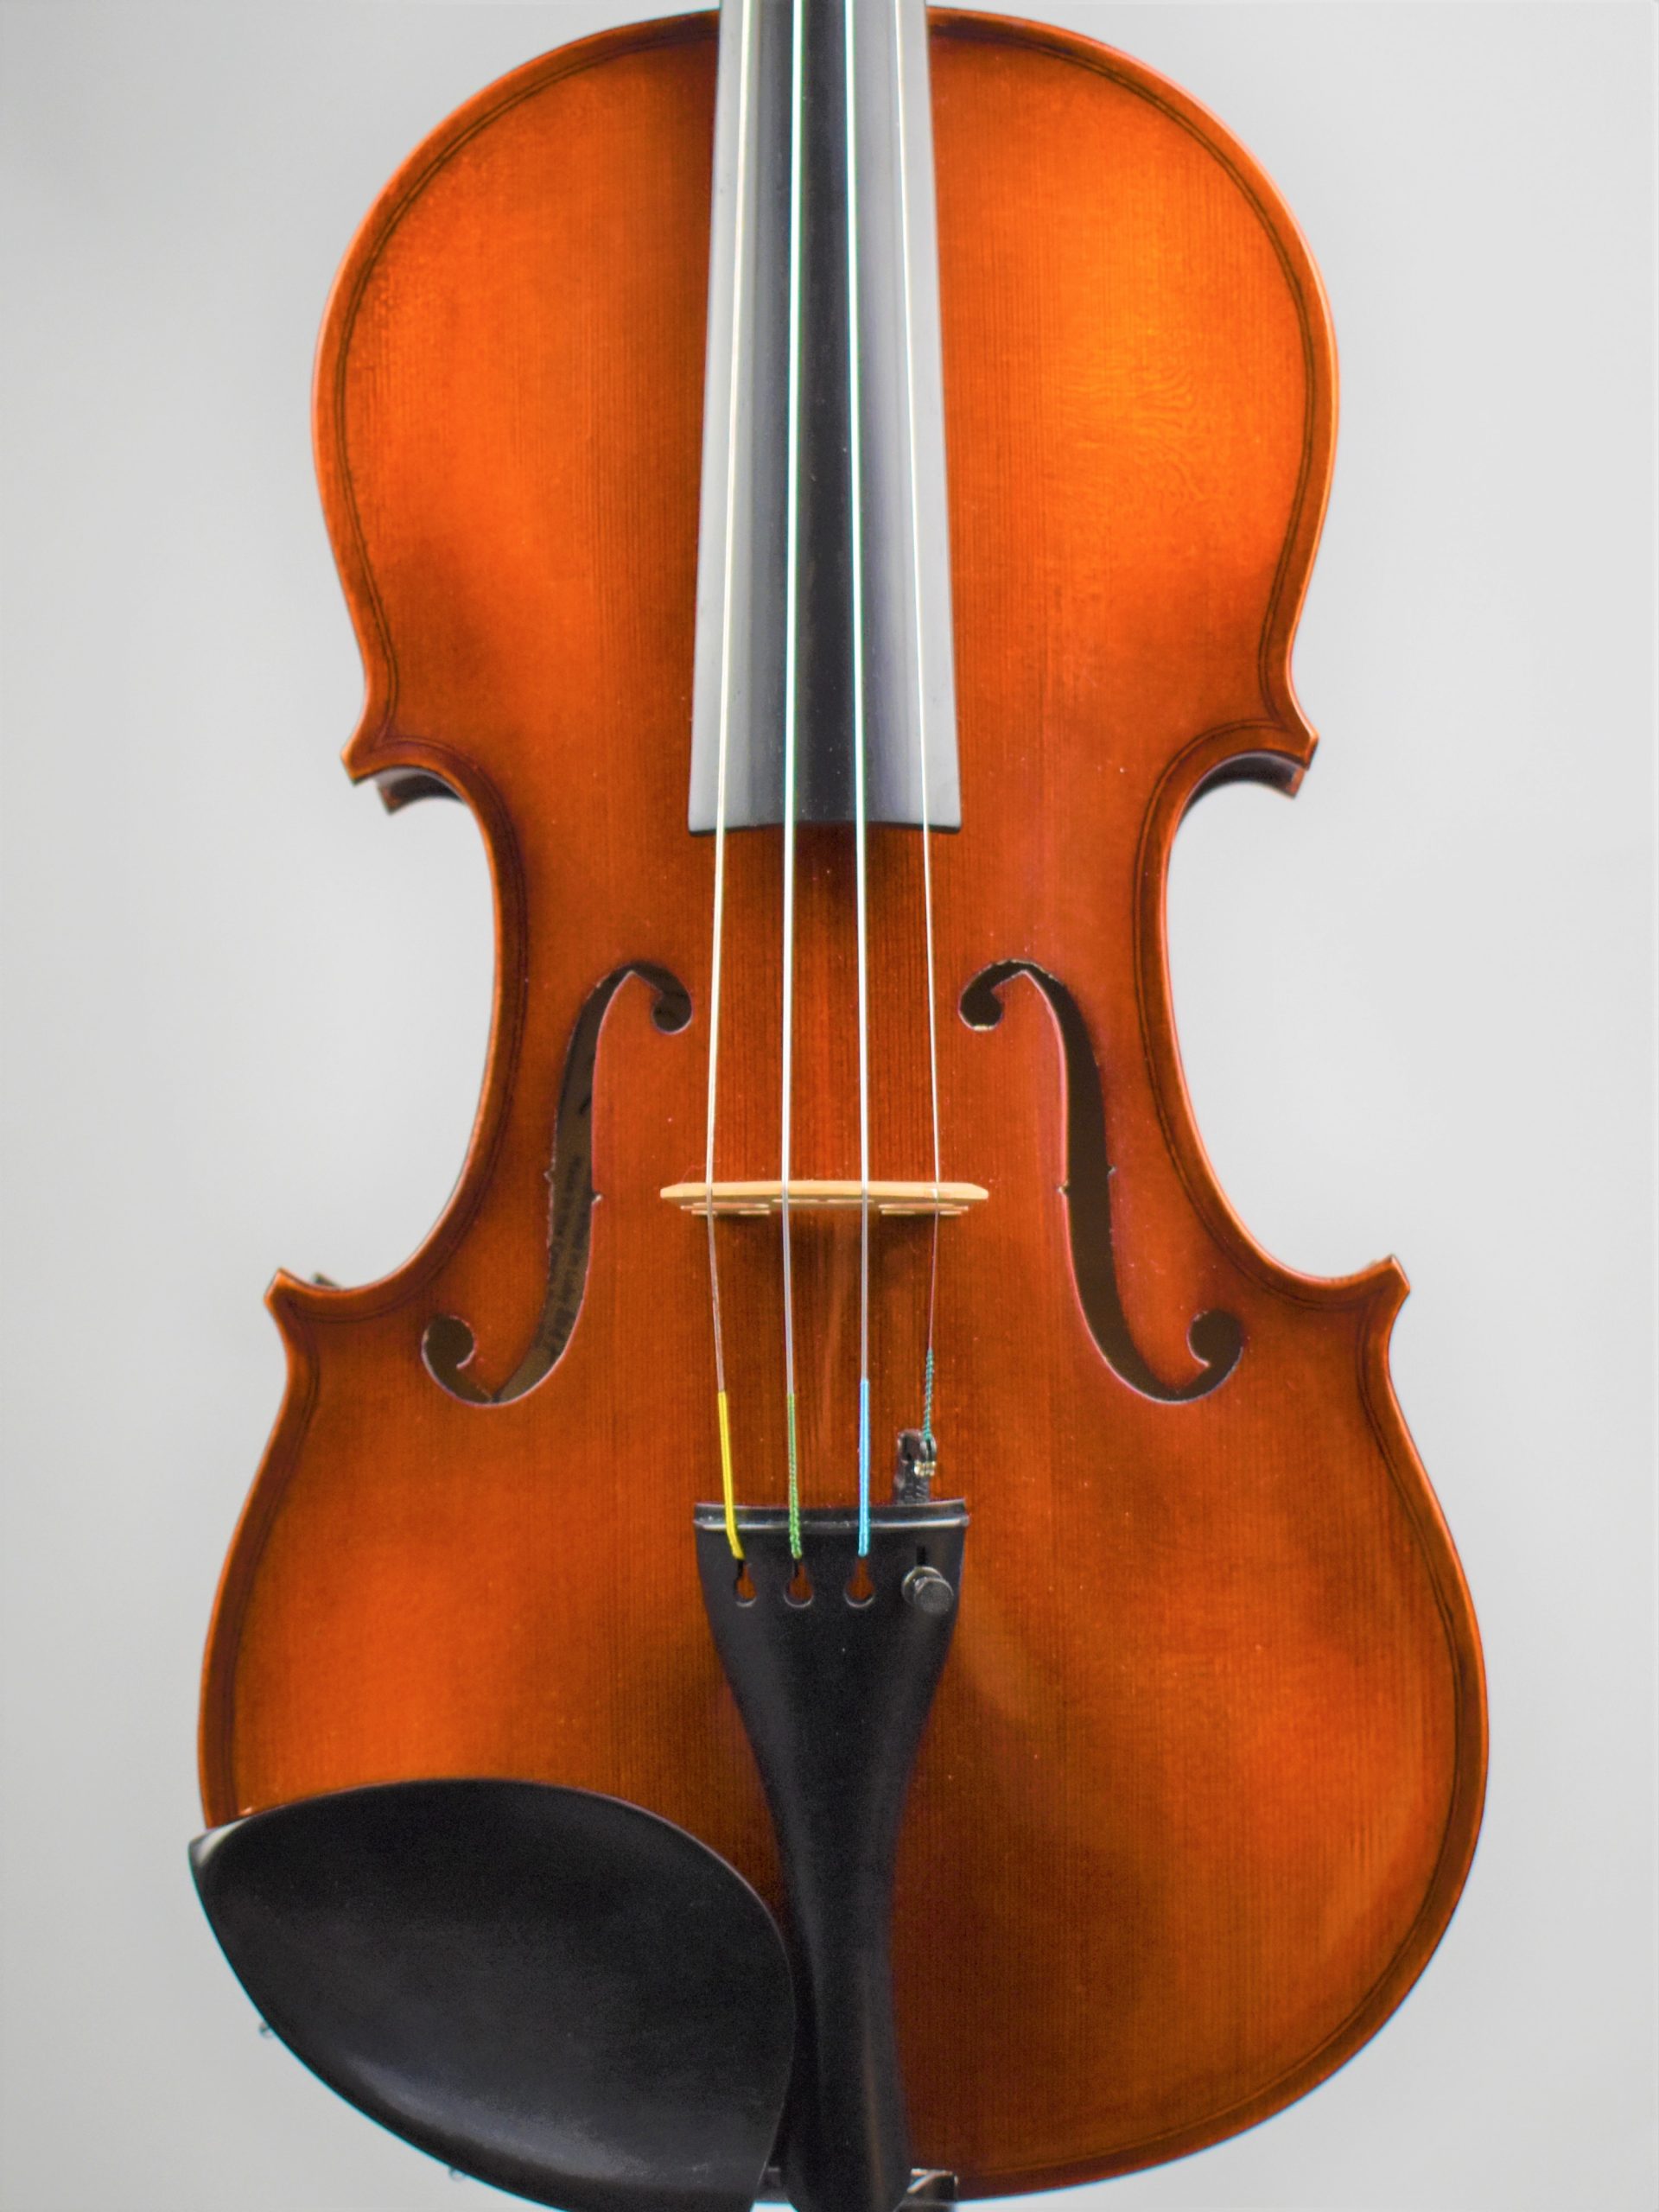 *AKORD KVINT ヴァイオリンのご紹介 チェコ＝ルヴィでバイオリン製作を行っているクヴィント社は、17世紀から続くチェコのバイオリン製作の伝統を受け継ぎ、ボヘミアの有能な職人によって手がけられた良質バイオリン。有名なドヴォルザーク・カルテットの監修のもと、音質テストを繰り返し、高い品質と優れ […]